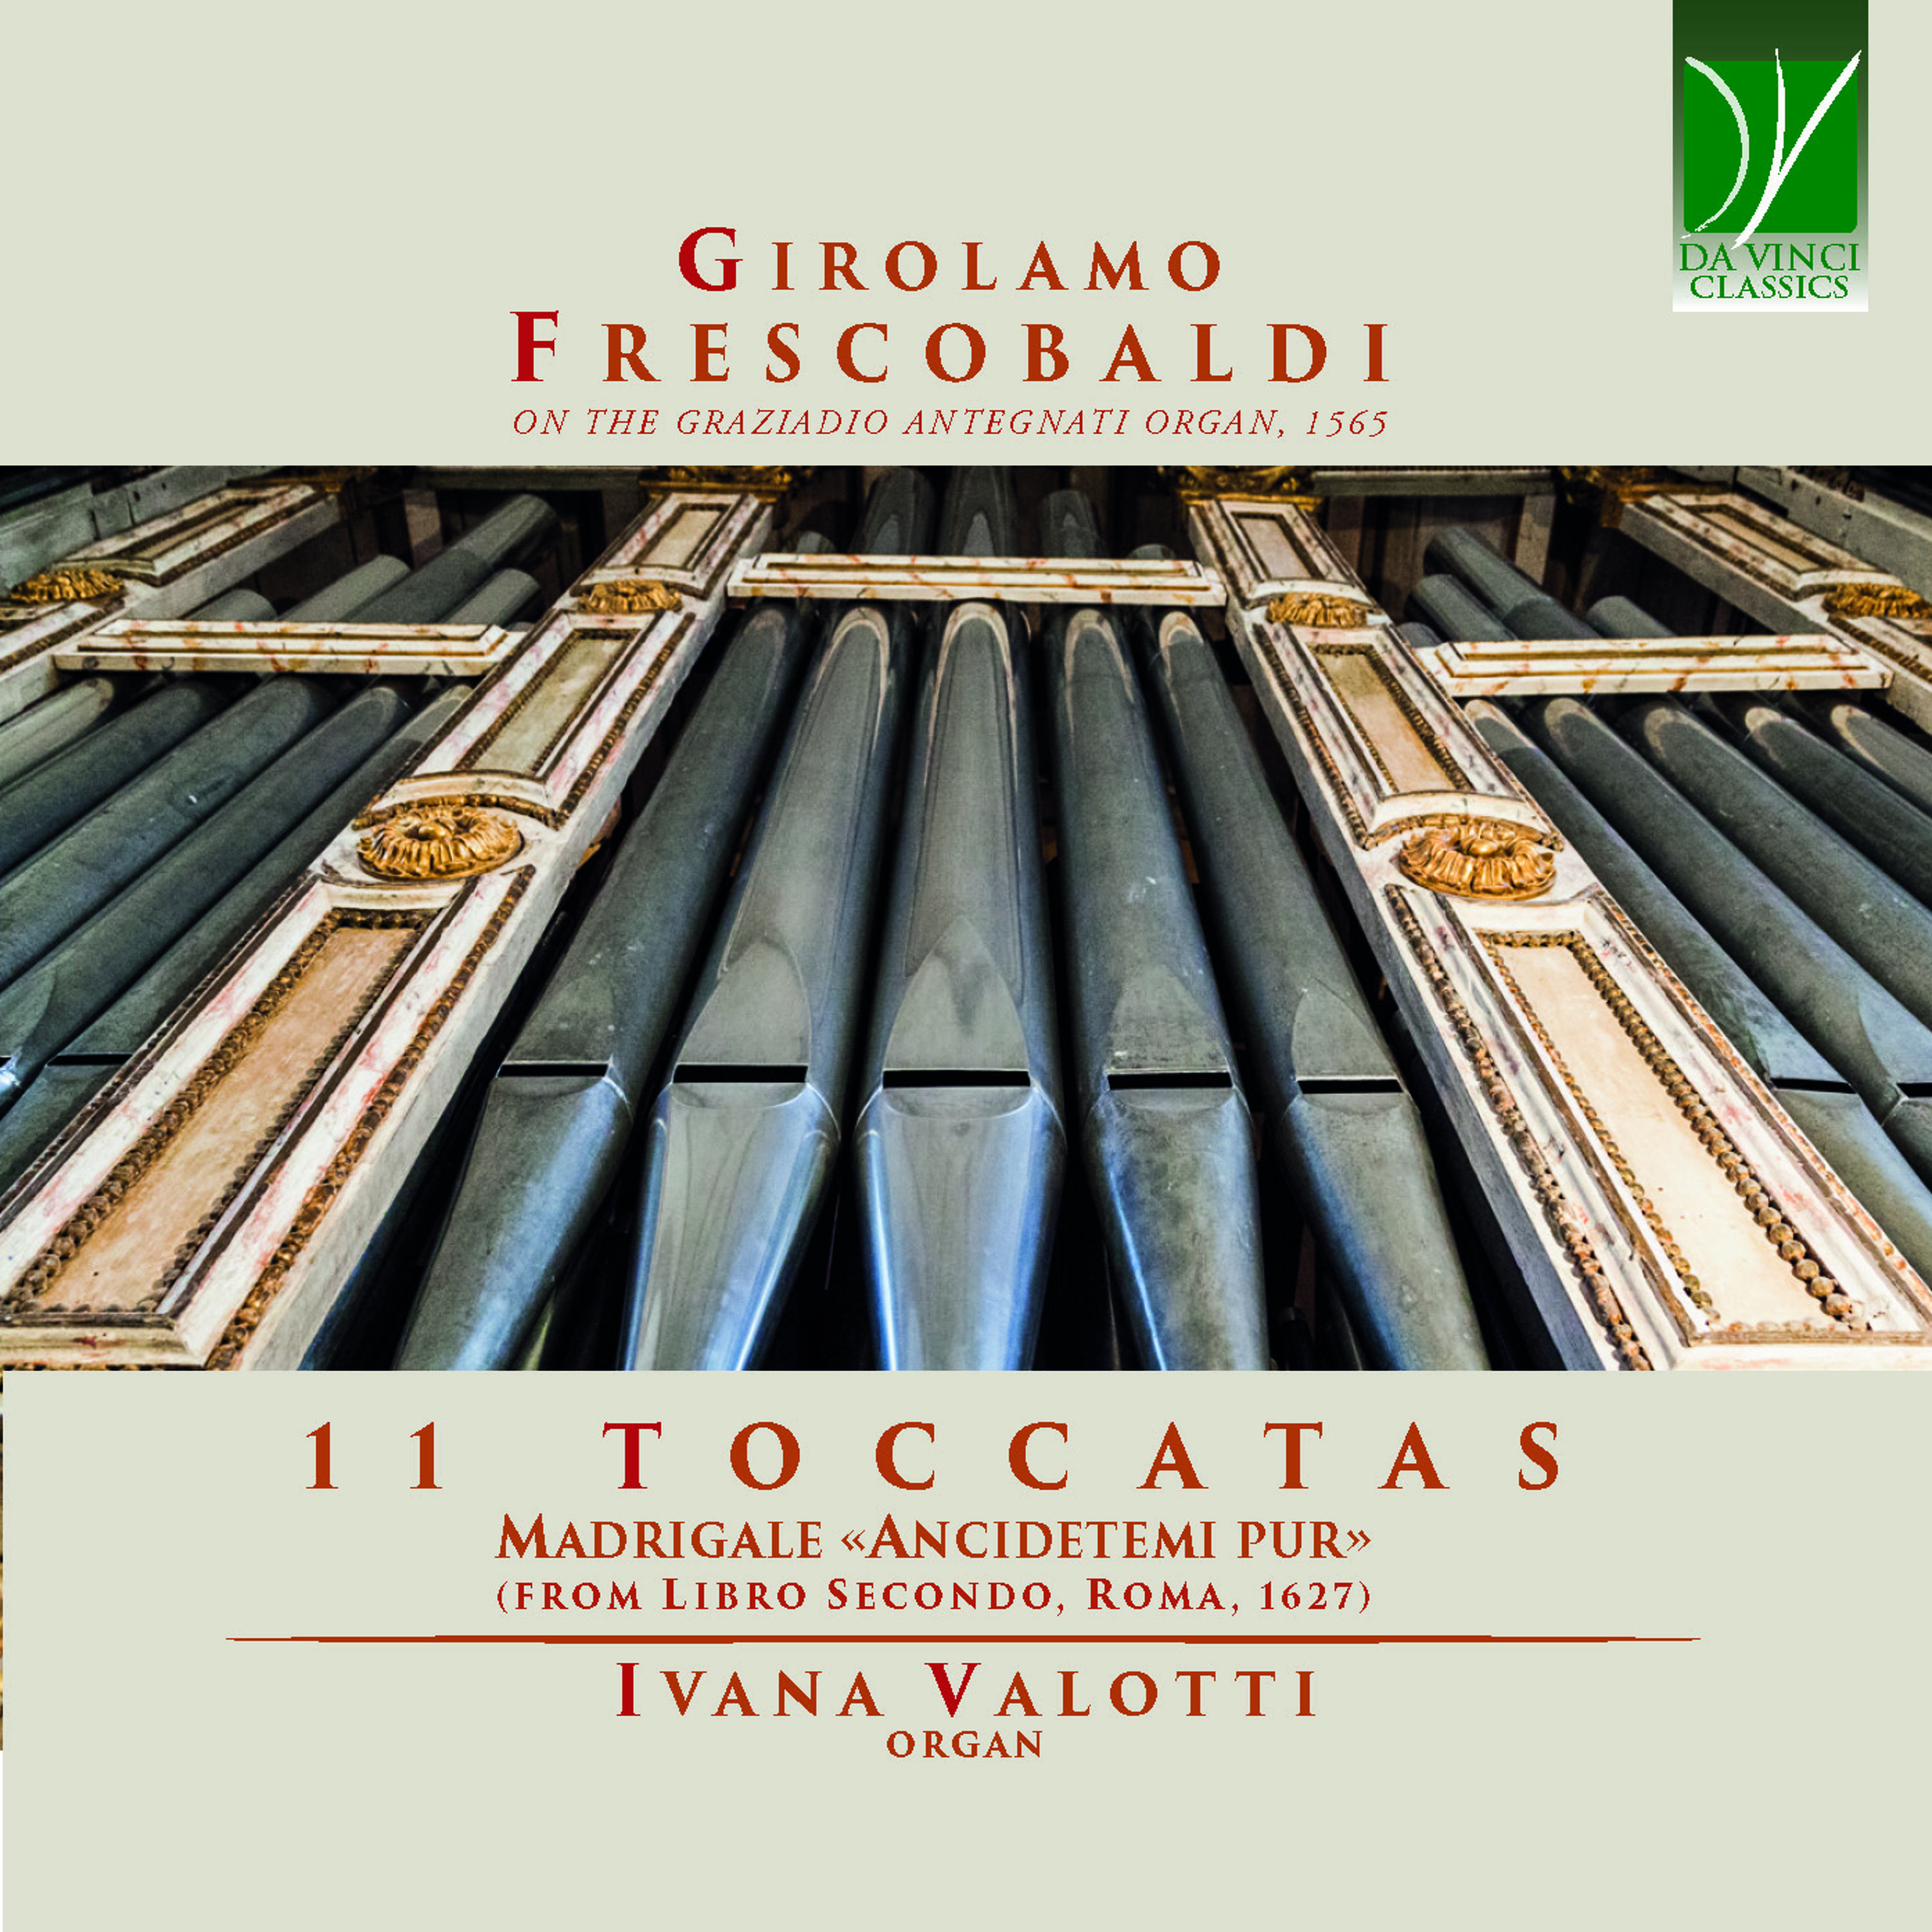 Ivana Valotti - Toccate e partite d'intavolatura, Libro 2 in D Major, F 3.03:No. 3, Toccata terza. Per l’organo da sonarsi alla levatione